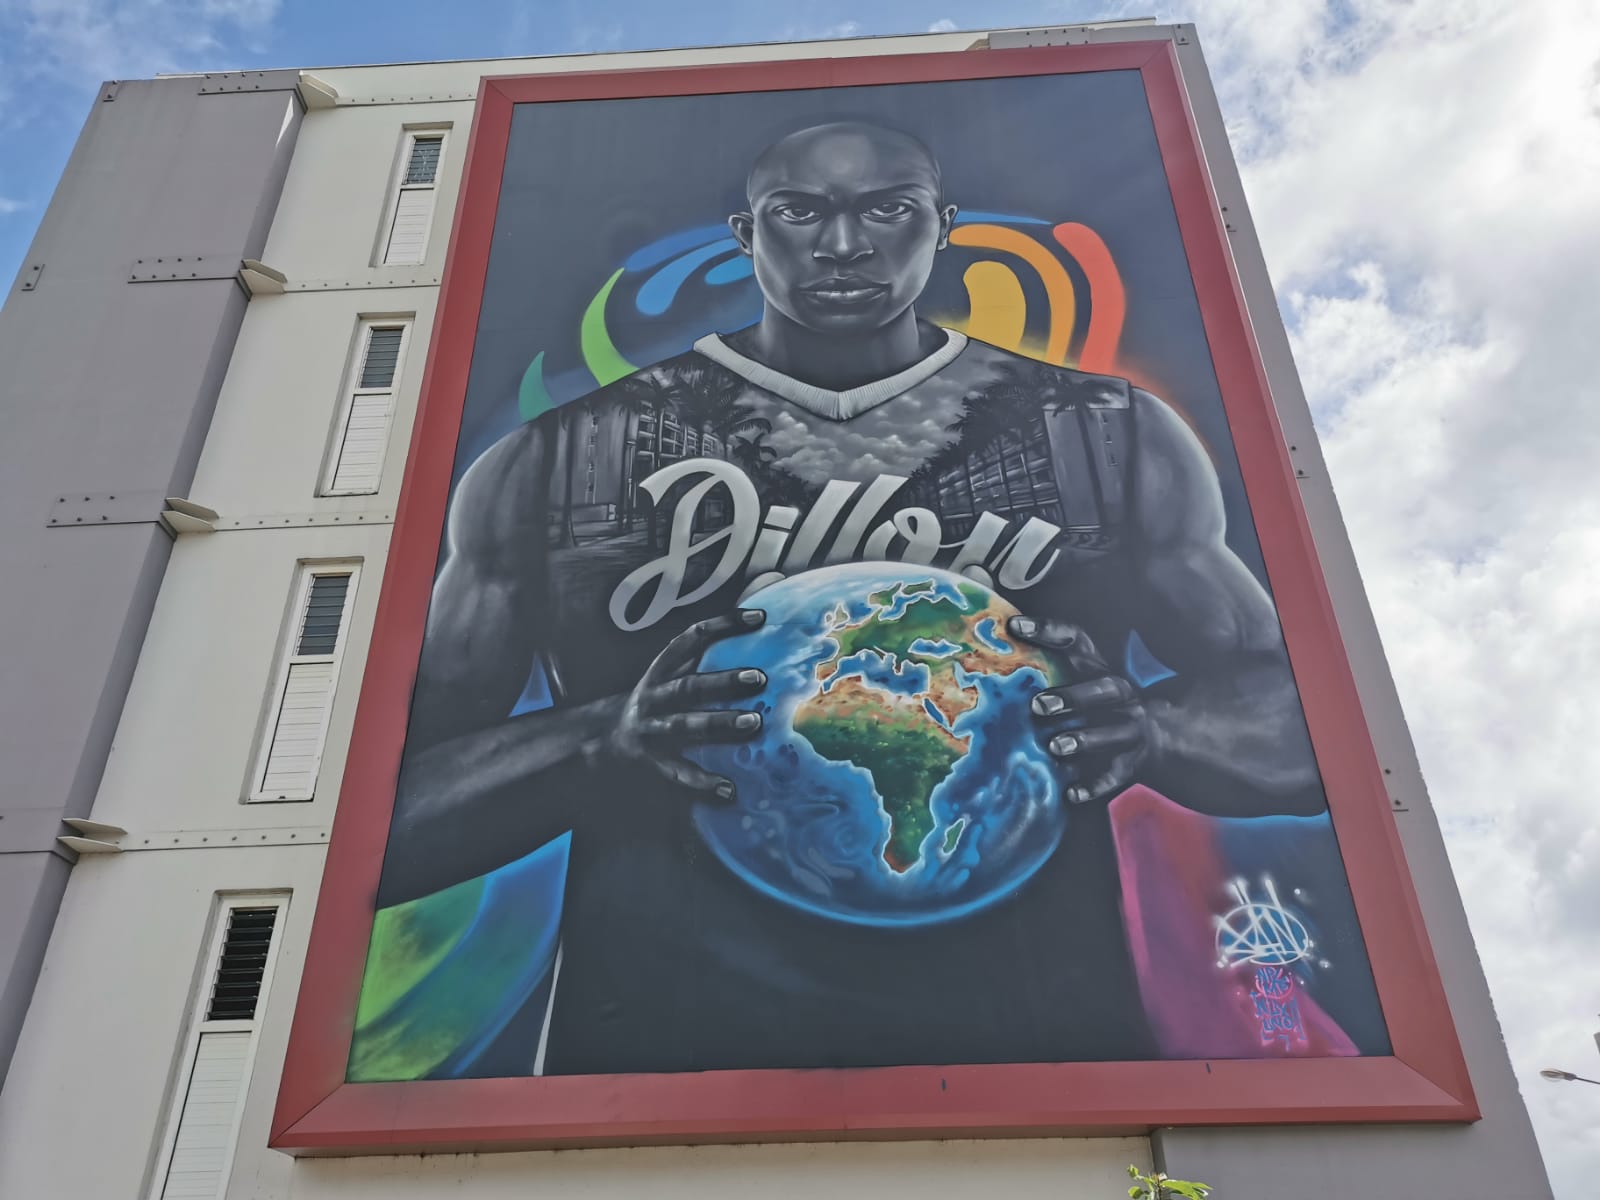     [VIDEO] De nouvelles fresques colorent les immeubles de la cité Dillon

